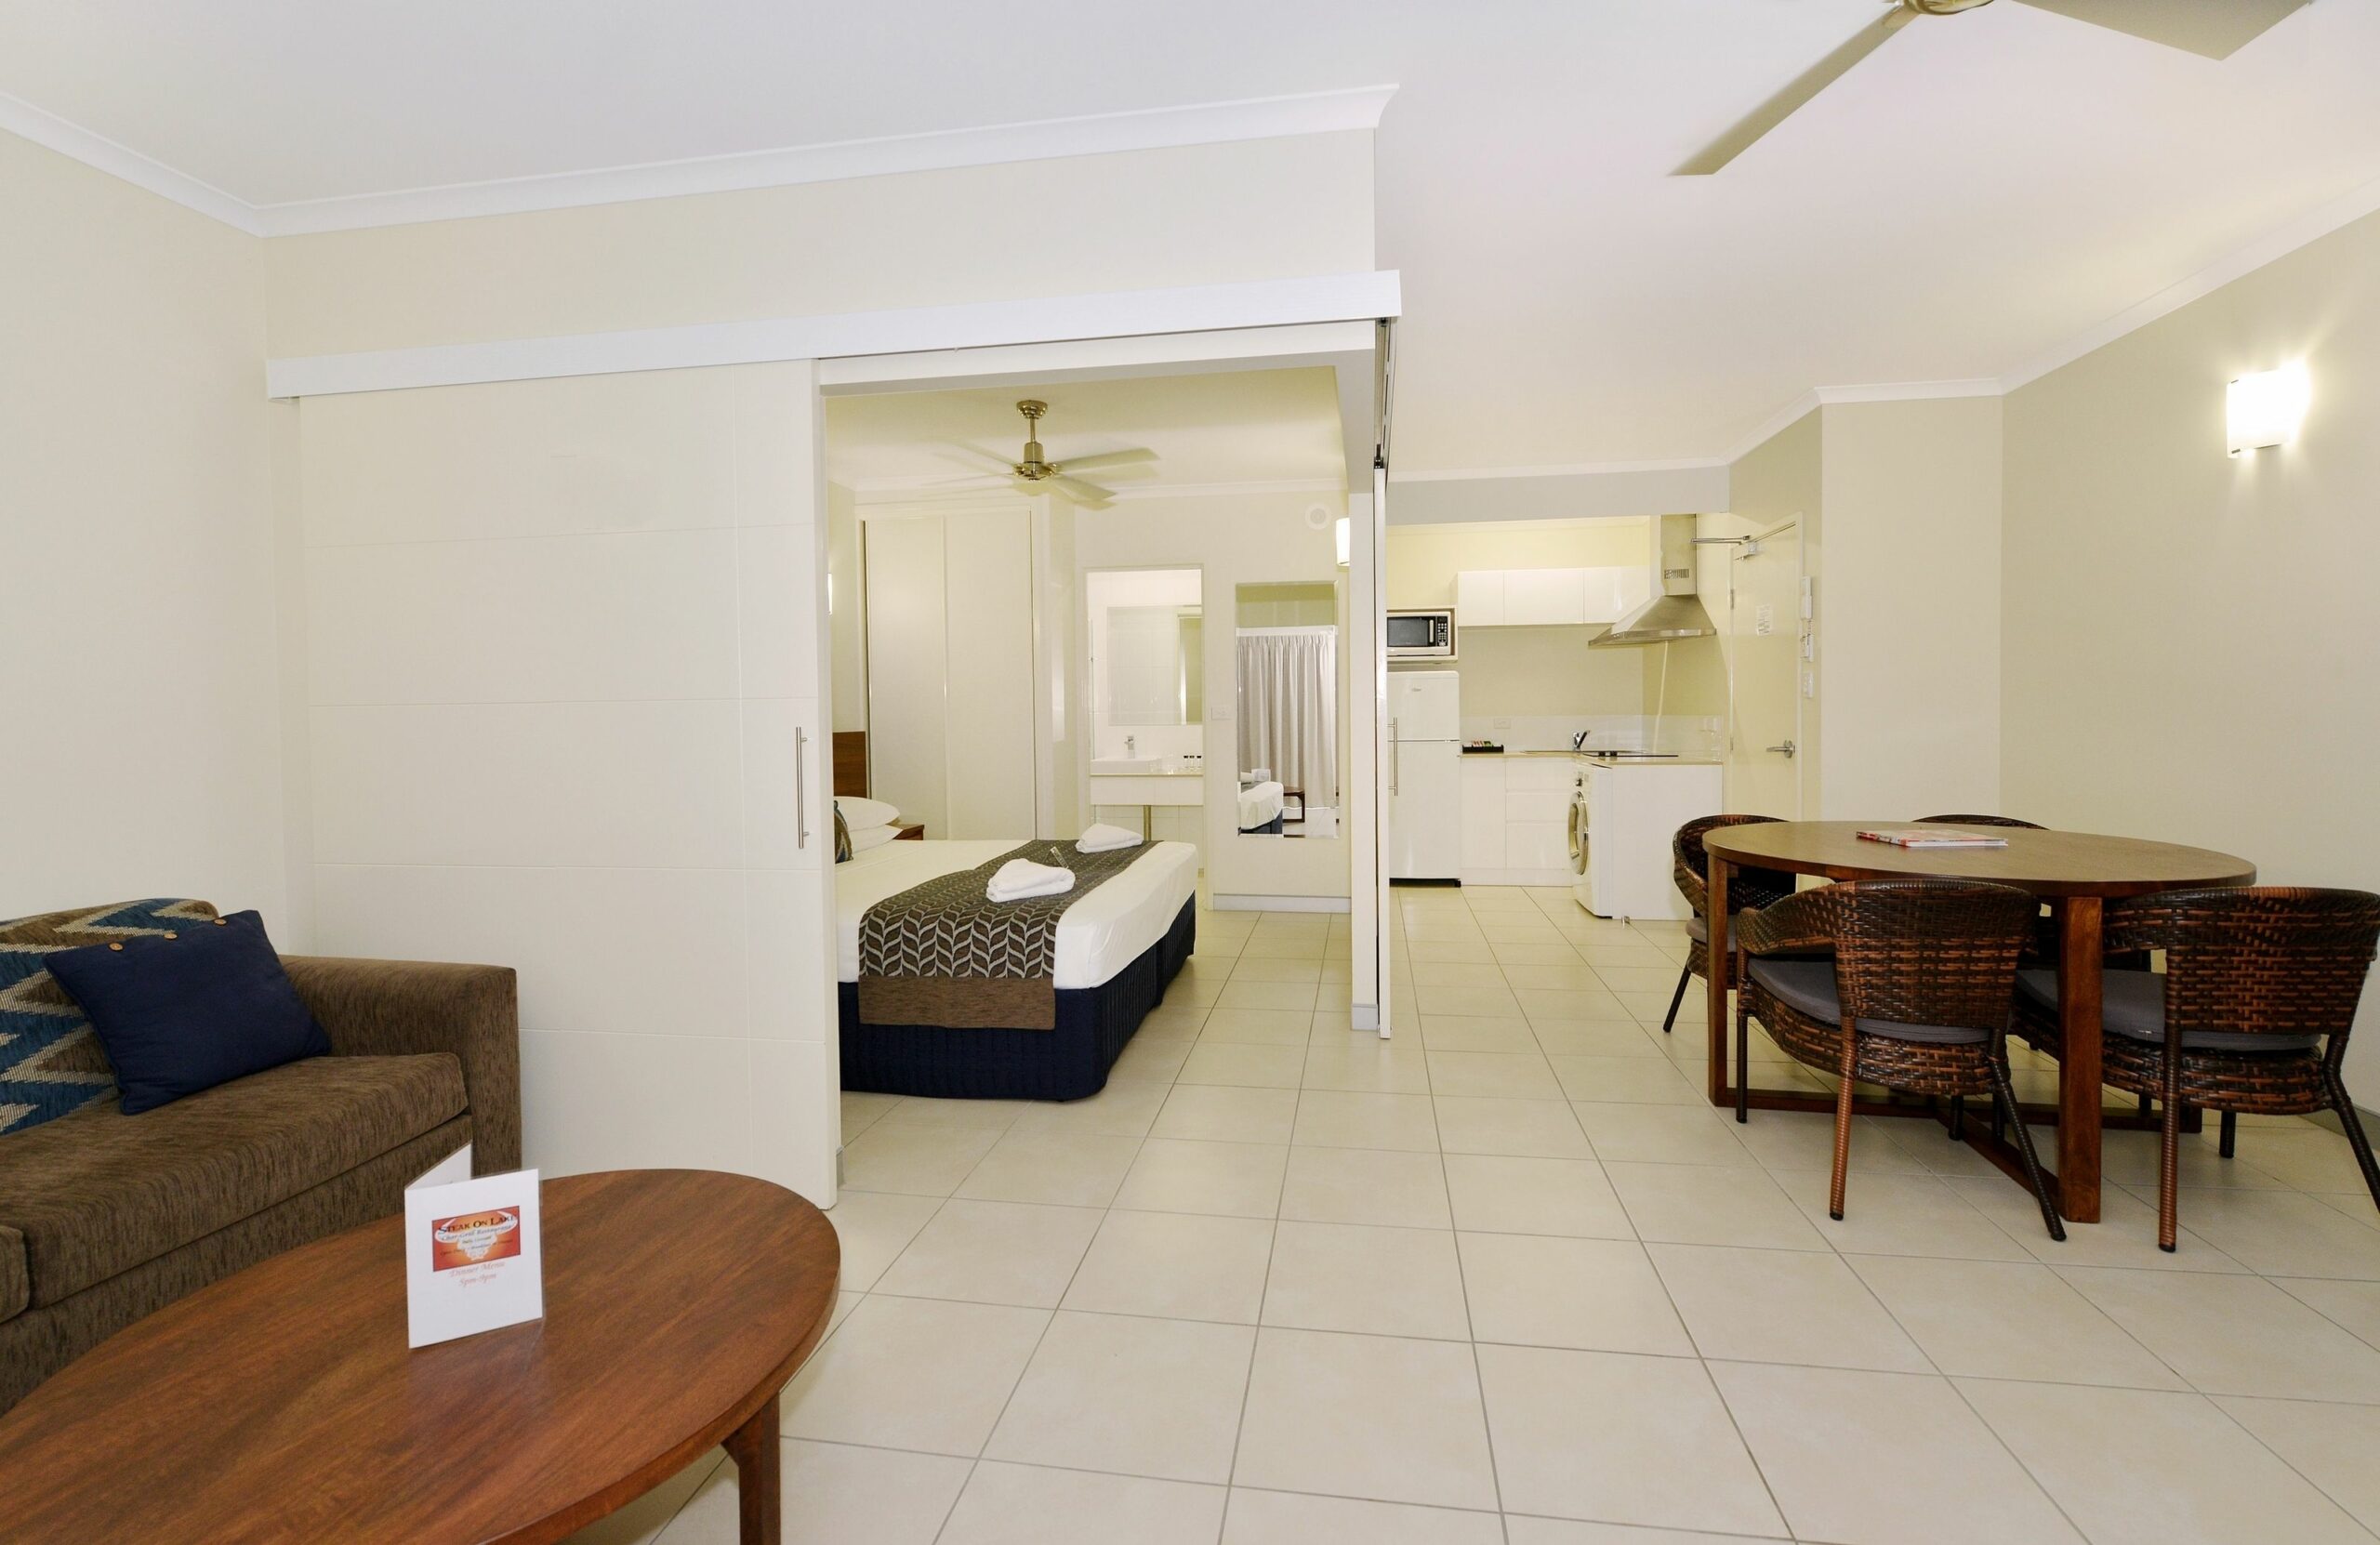 Cairns Queenslander Hotel & Apartments